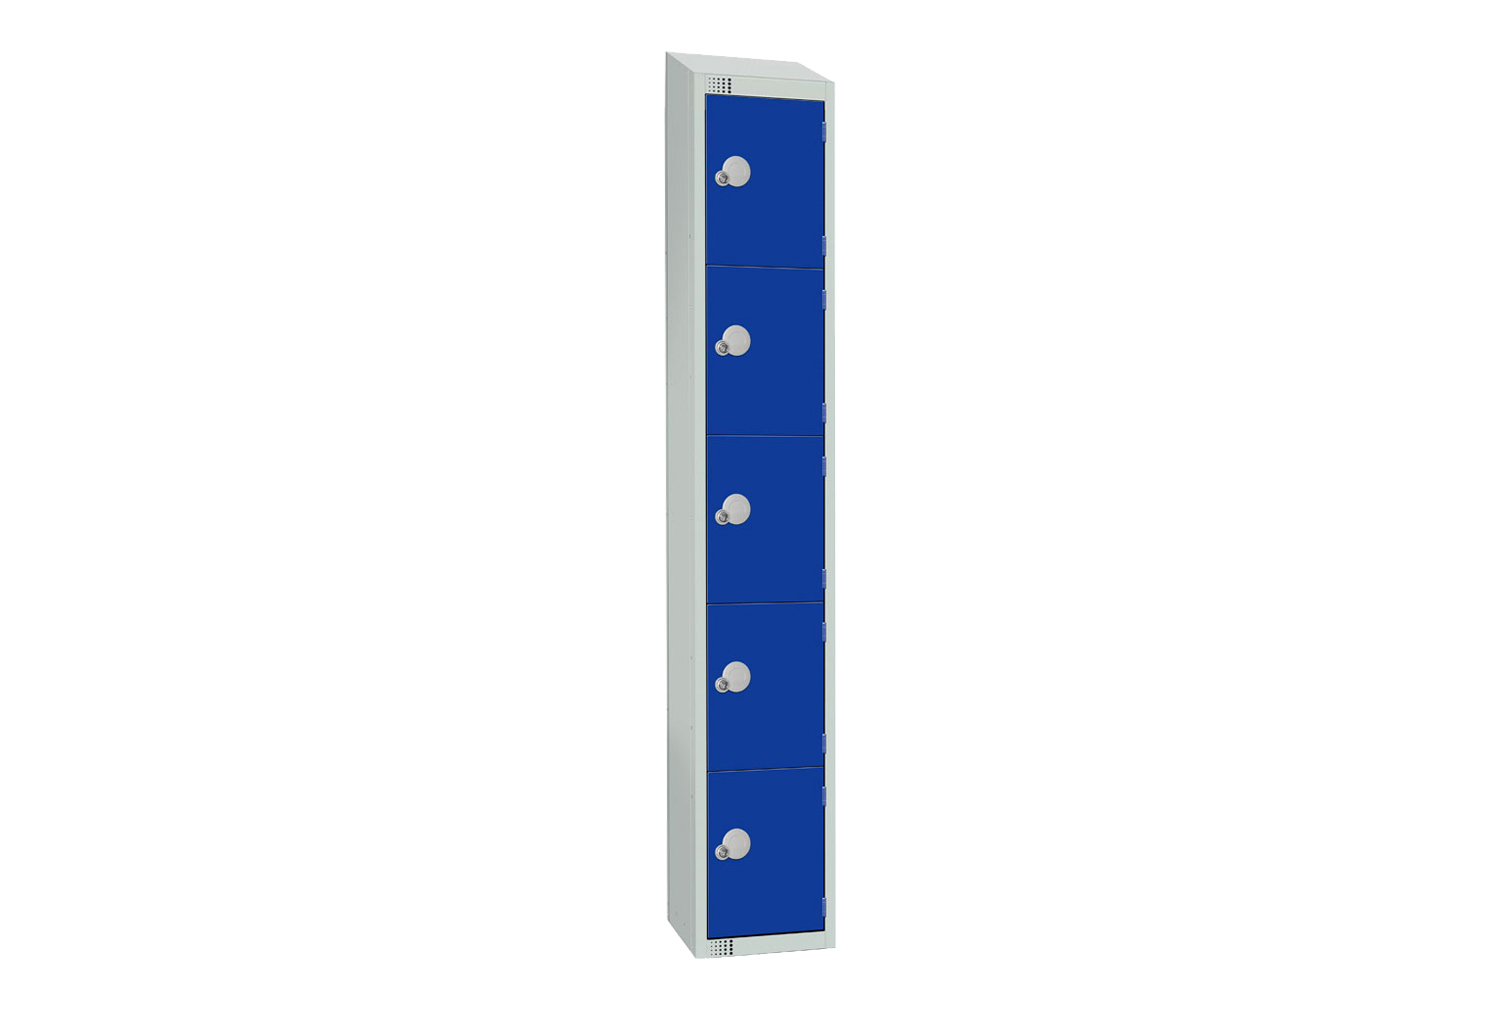 Elite Standard 5 Door Locker With Sloping Top, 30wx45dx195h (cm), Cam Lock, Blue